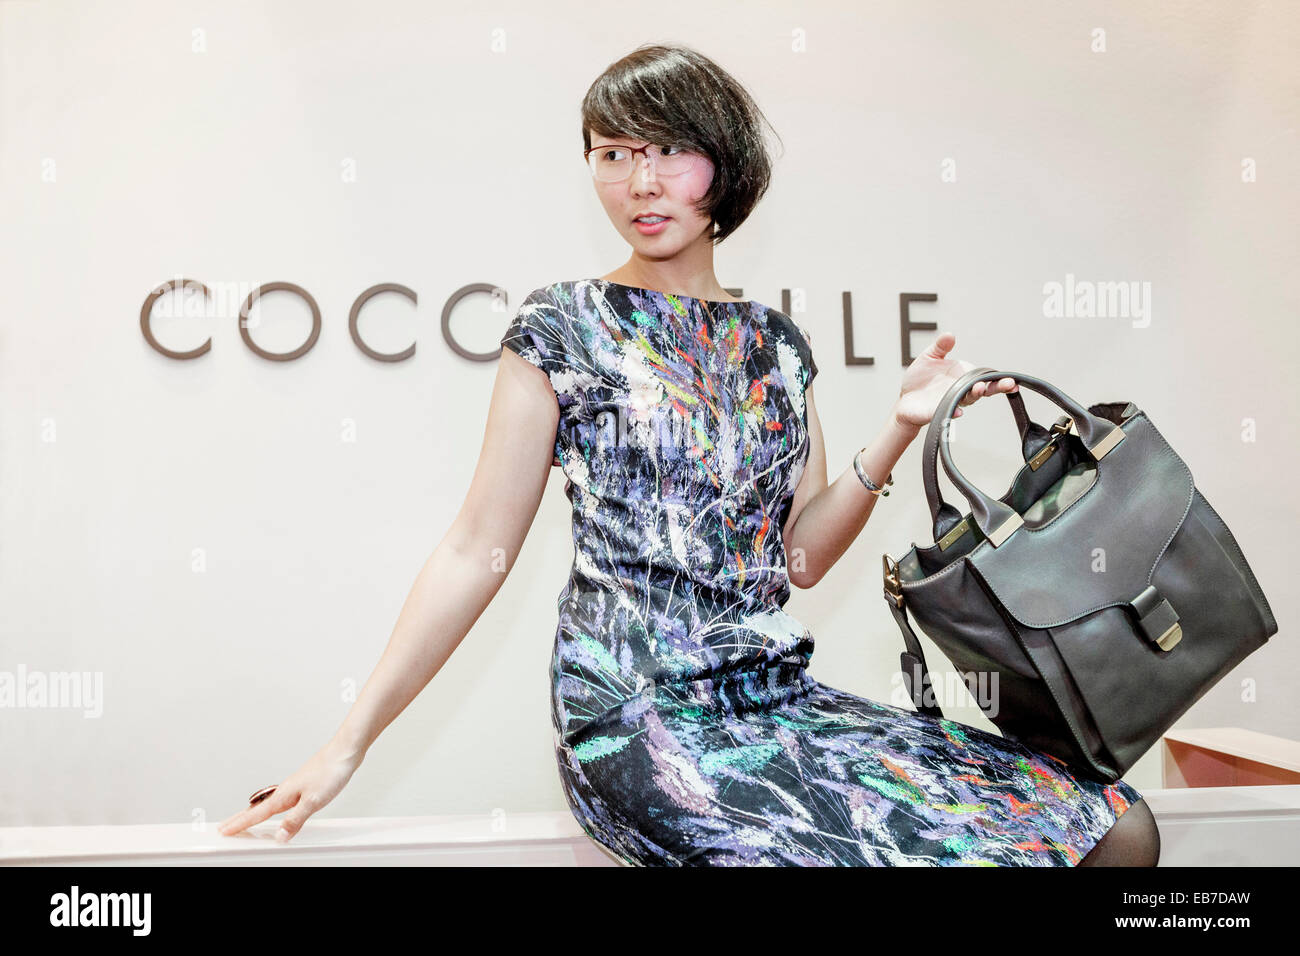 Jeune femme asiatique avec un sac à main Coccinelle Banque D'Images